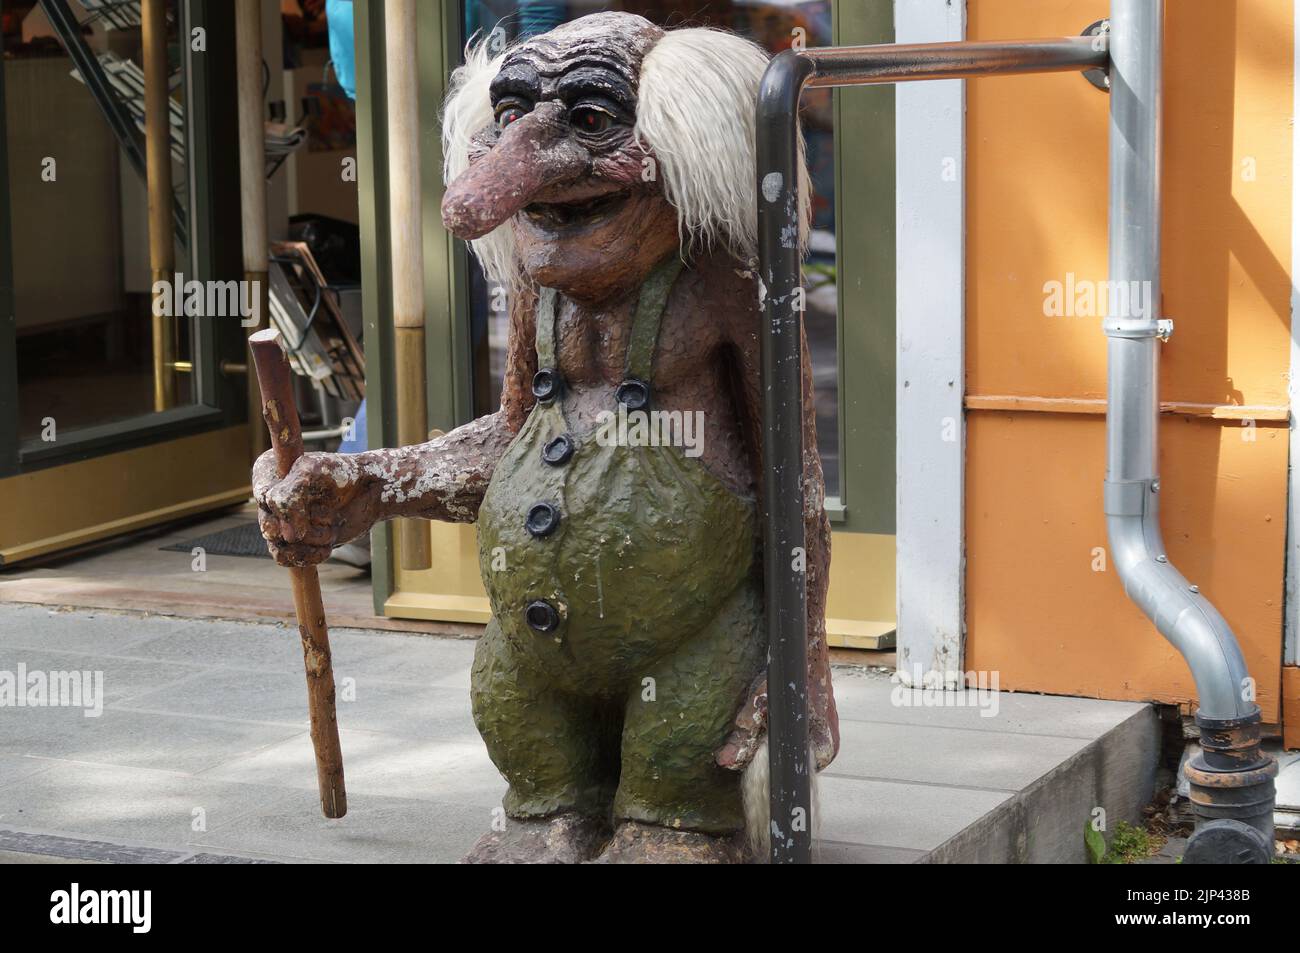 Primer plano de una escultura de troll que sostiene un palo de madera frente a una tienda en Noruega Foto de stock